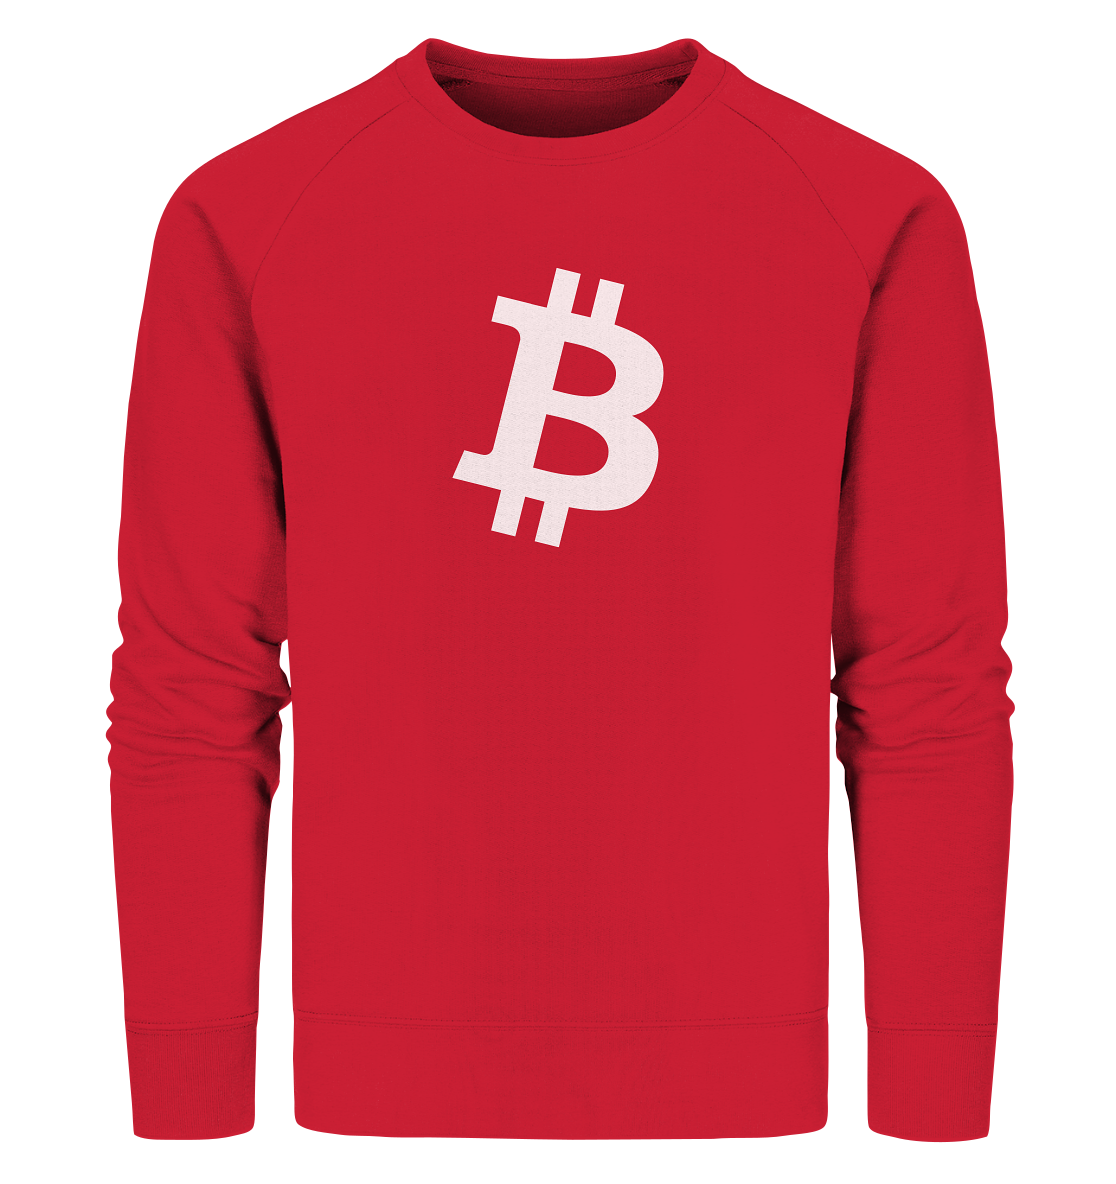 Bitcoin "simple B white" - Organic Sweatshirt